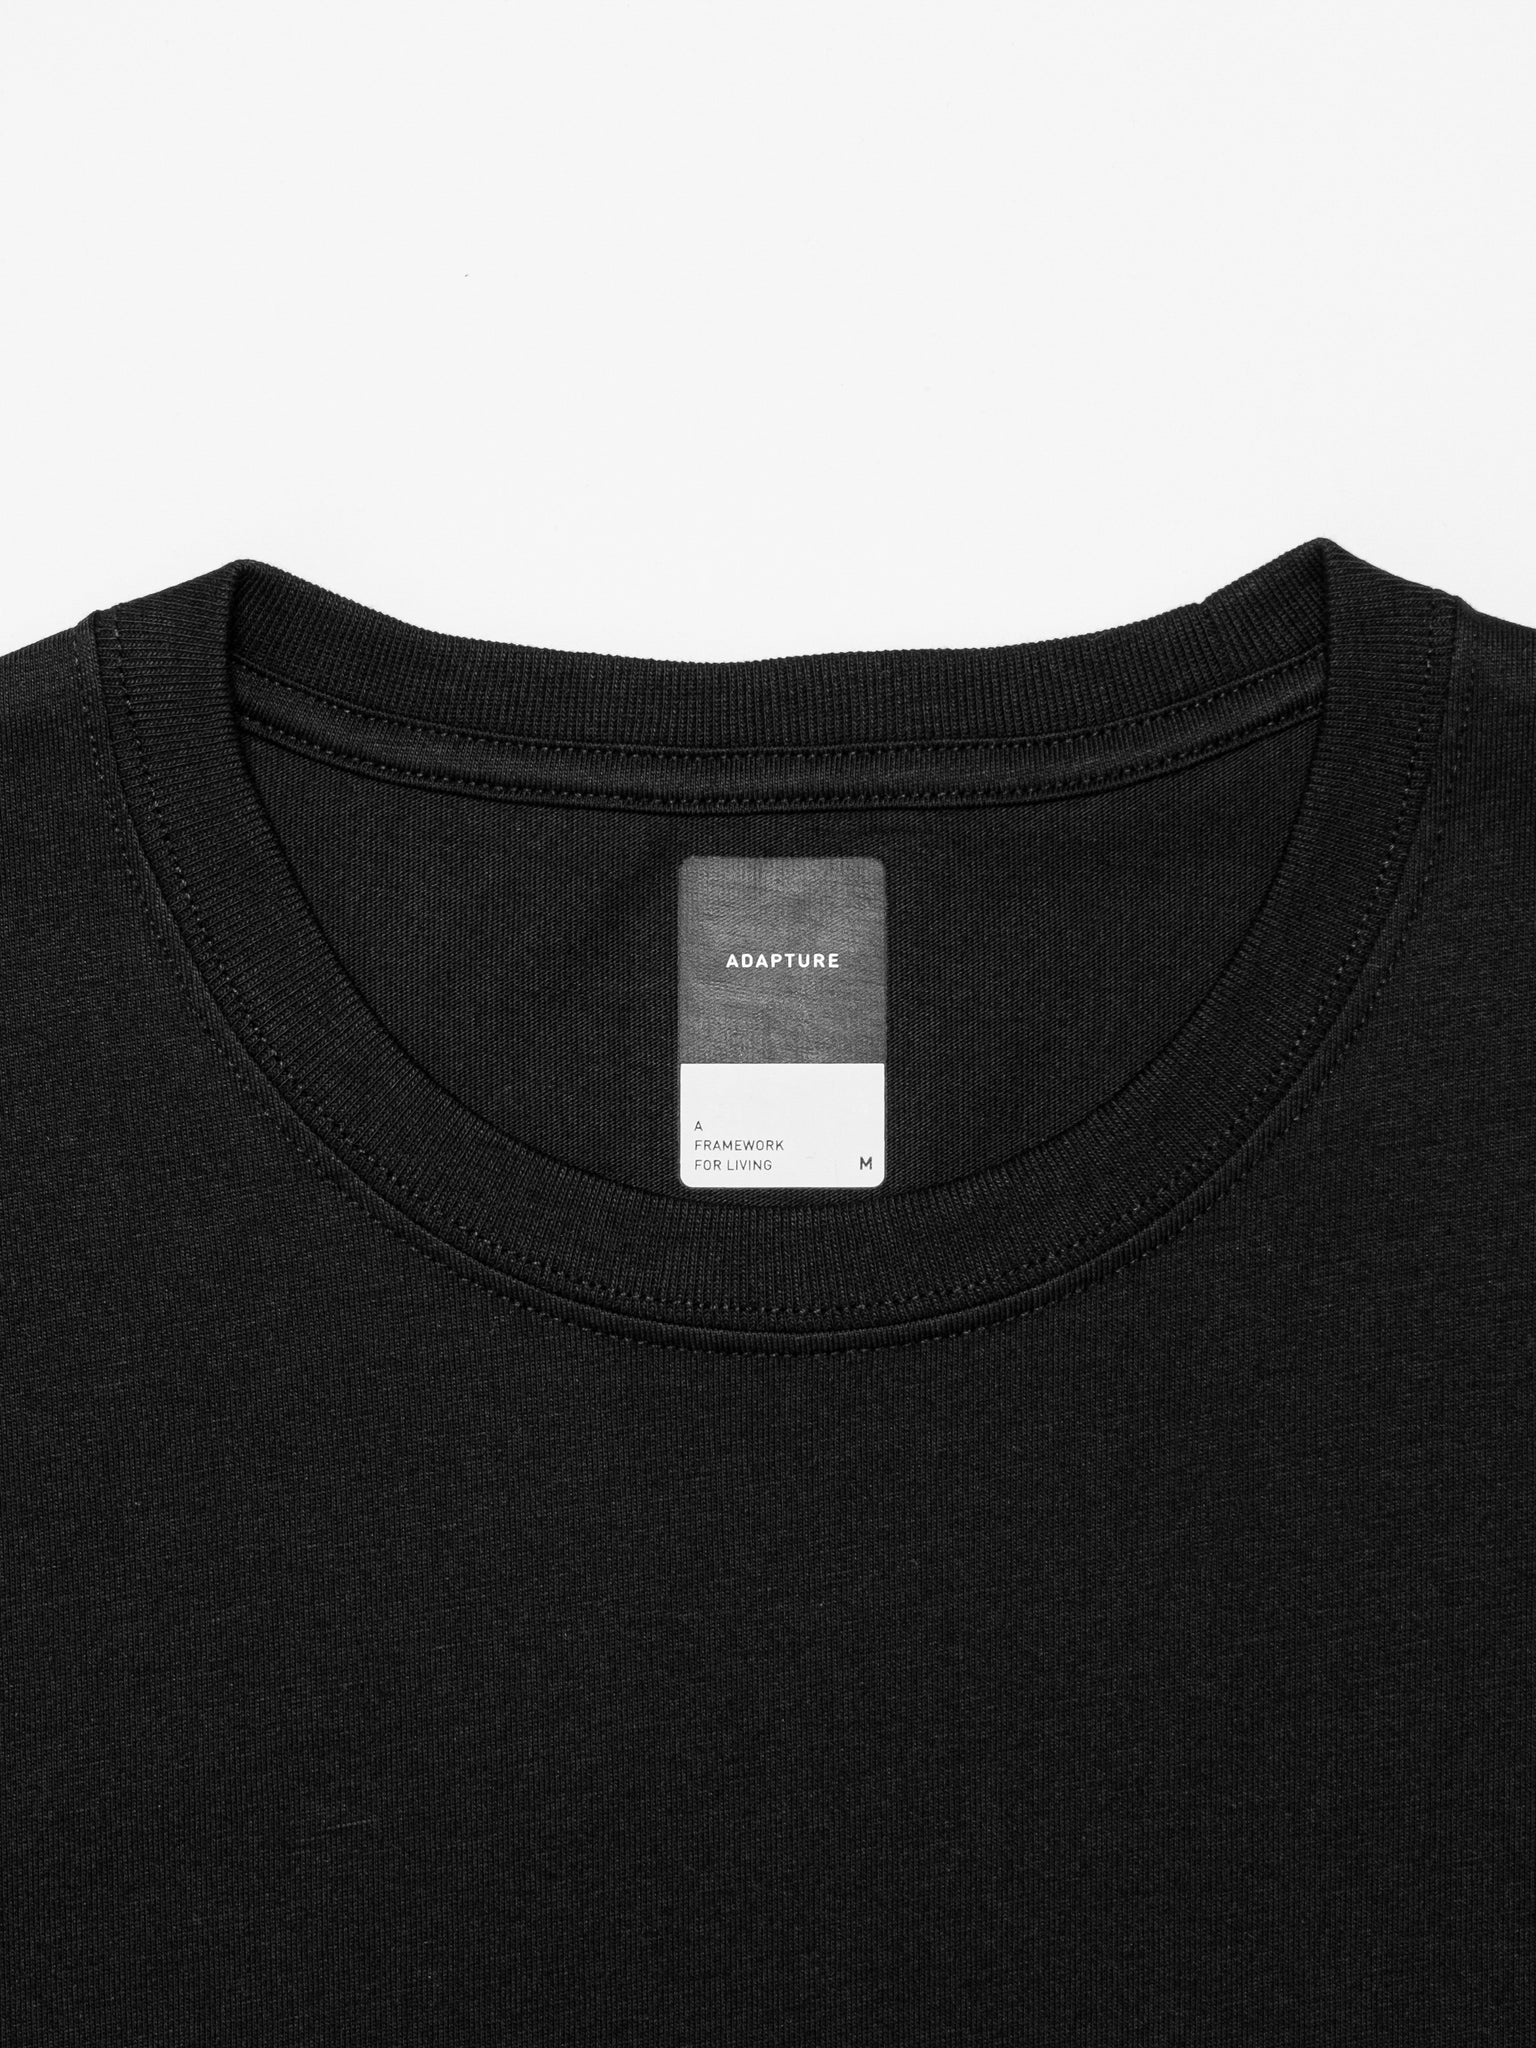 Standard Fit T-Shirt Black - v2